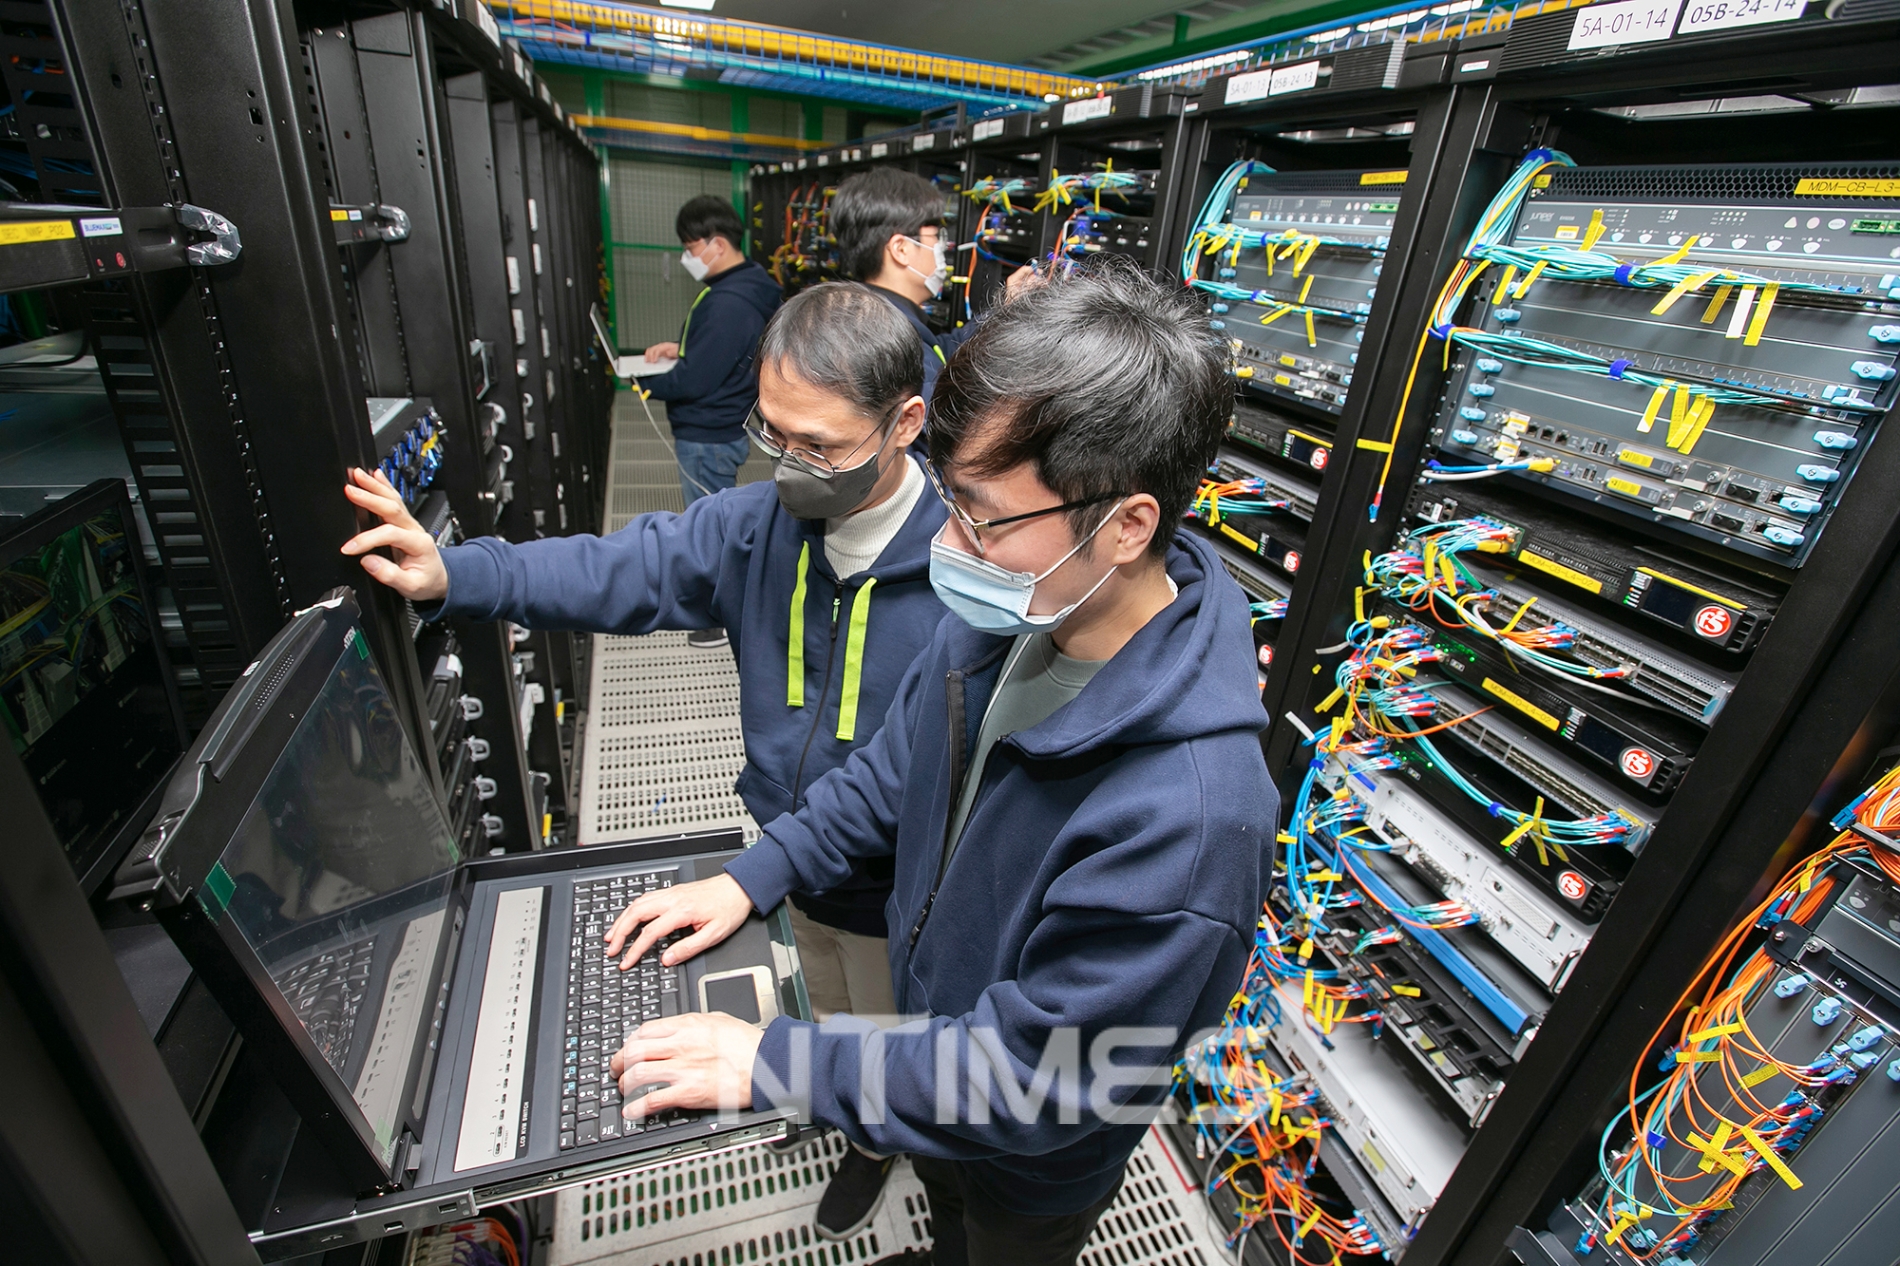 인터넷전문은행 케이뱅크(은행장 서호성) 테크(Tech) 본부 직원들이 서울 목동 KT 인터넷데이터센터(IDC)에 위치한 케이뱅크 정보기술(IT) 센터에서 IT 장비를 점검하고 있다./사진=케이뱅크